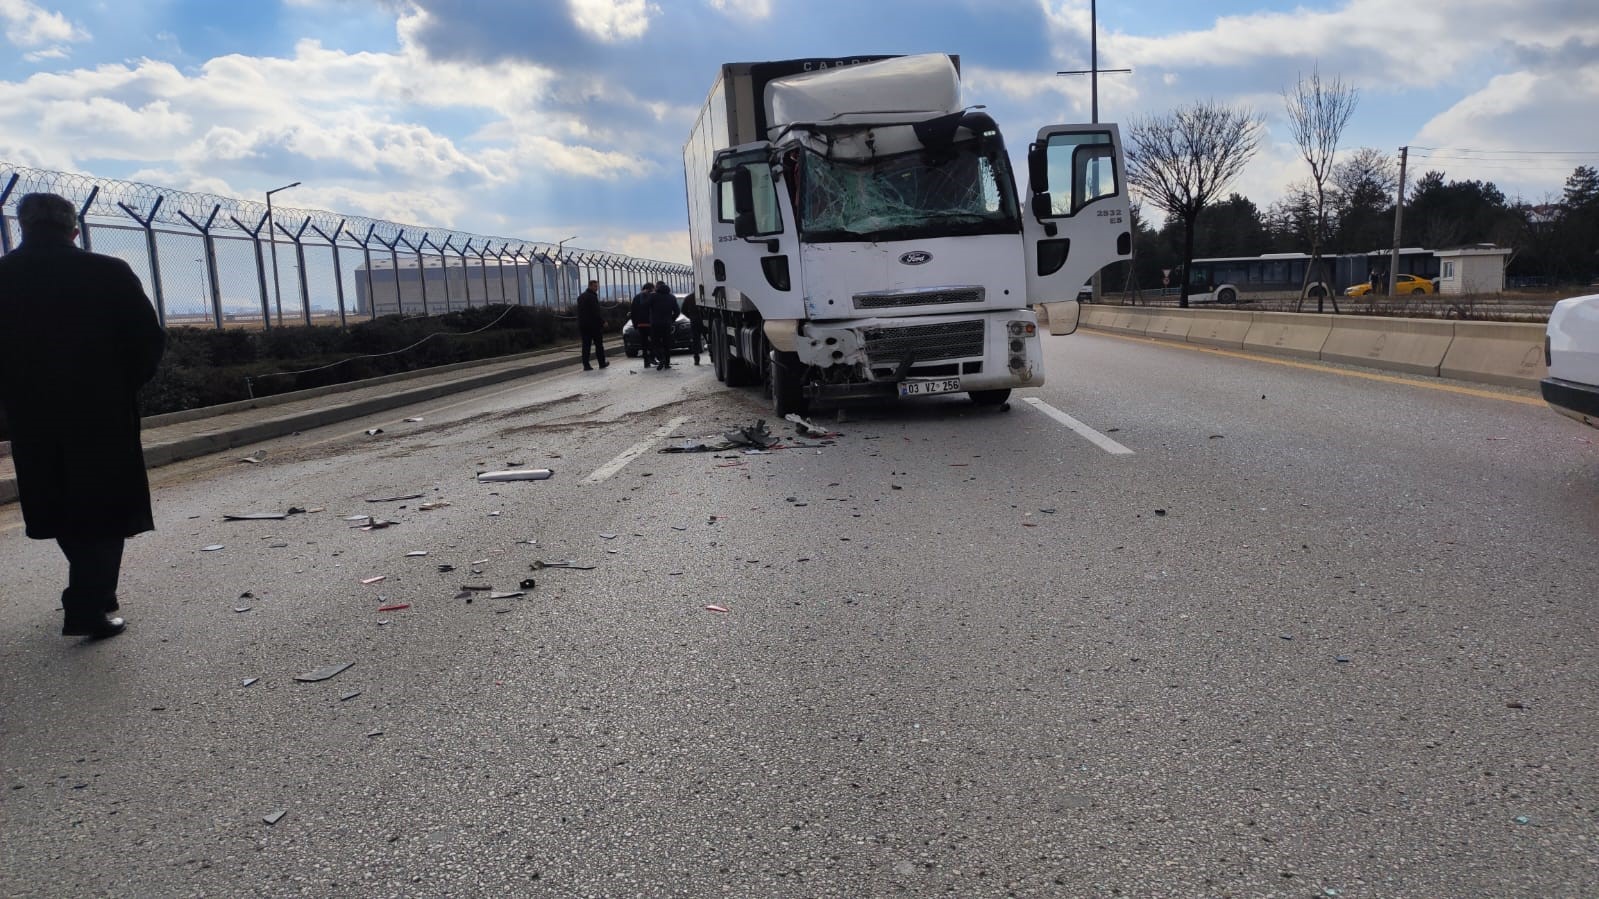 Ankara’da kamyon ile minibüs çarpıştı: 7 yaralı